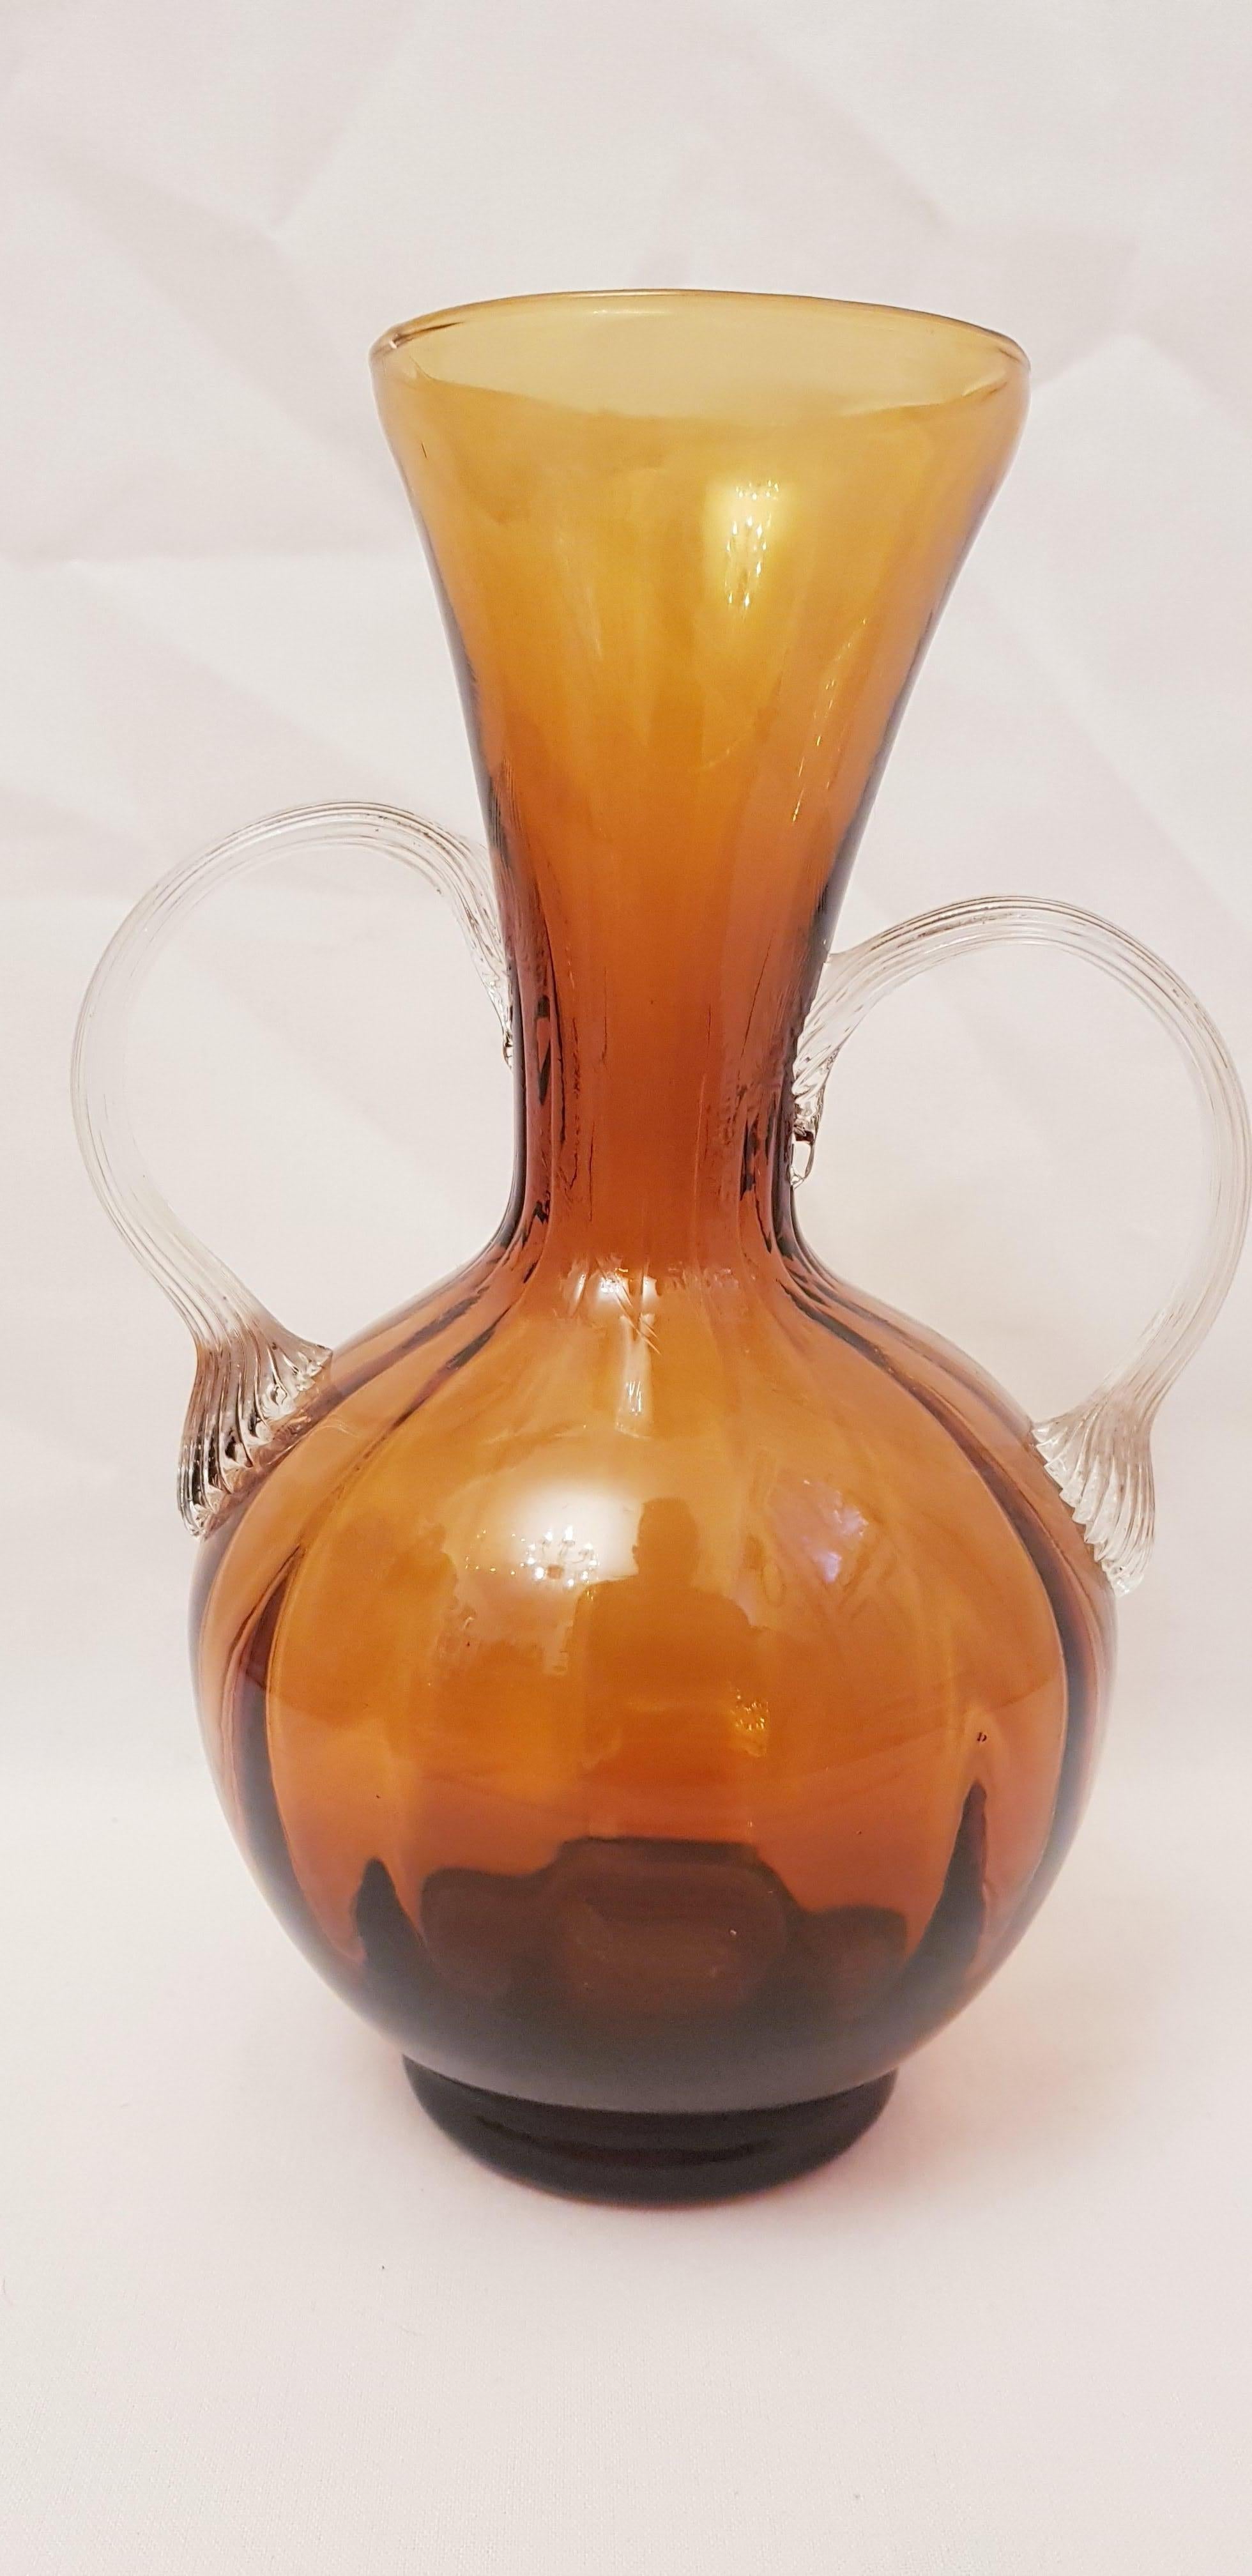 Beautiful vitange murano glass Amfora vase year 1960 by Carlo Moretti brilliant condition. 